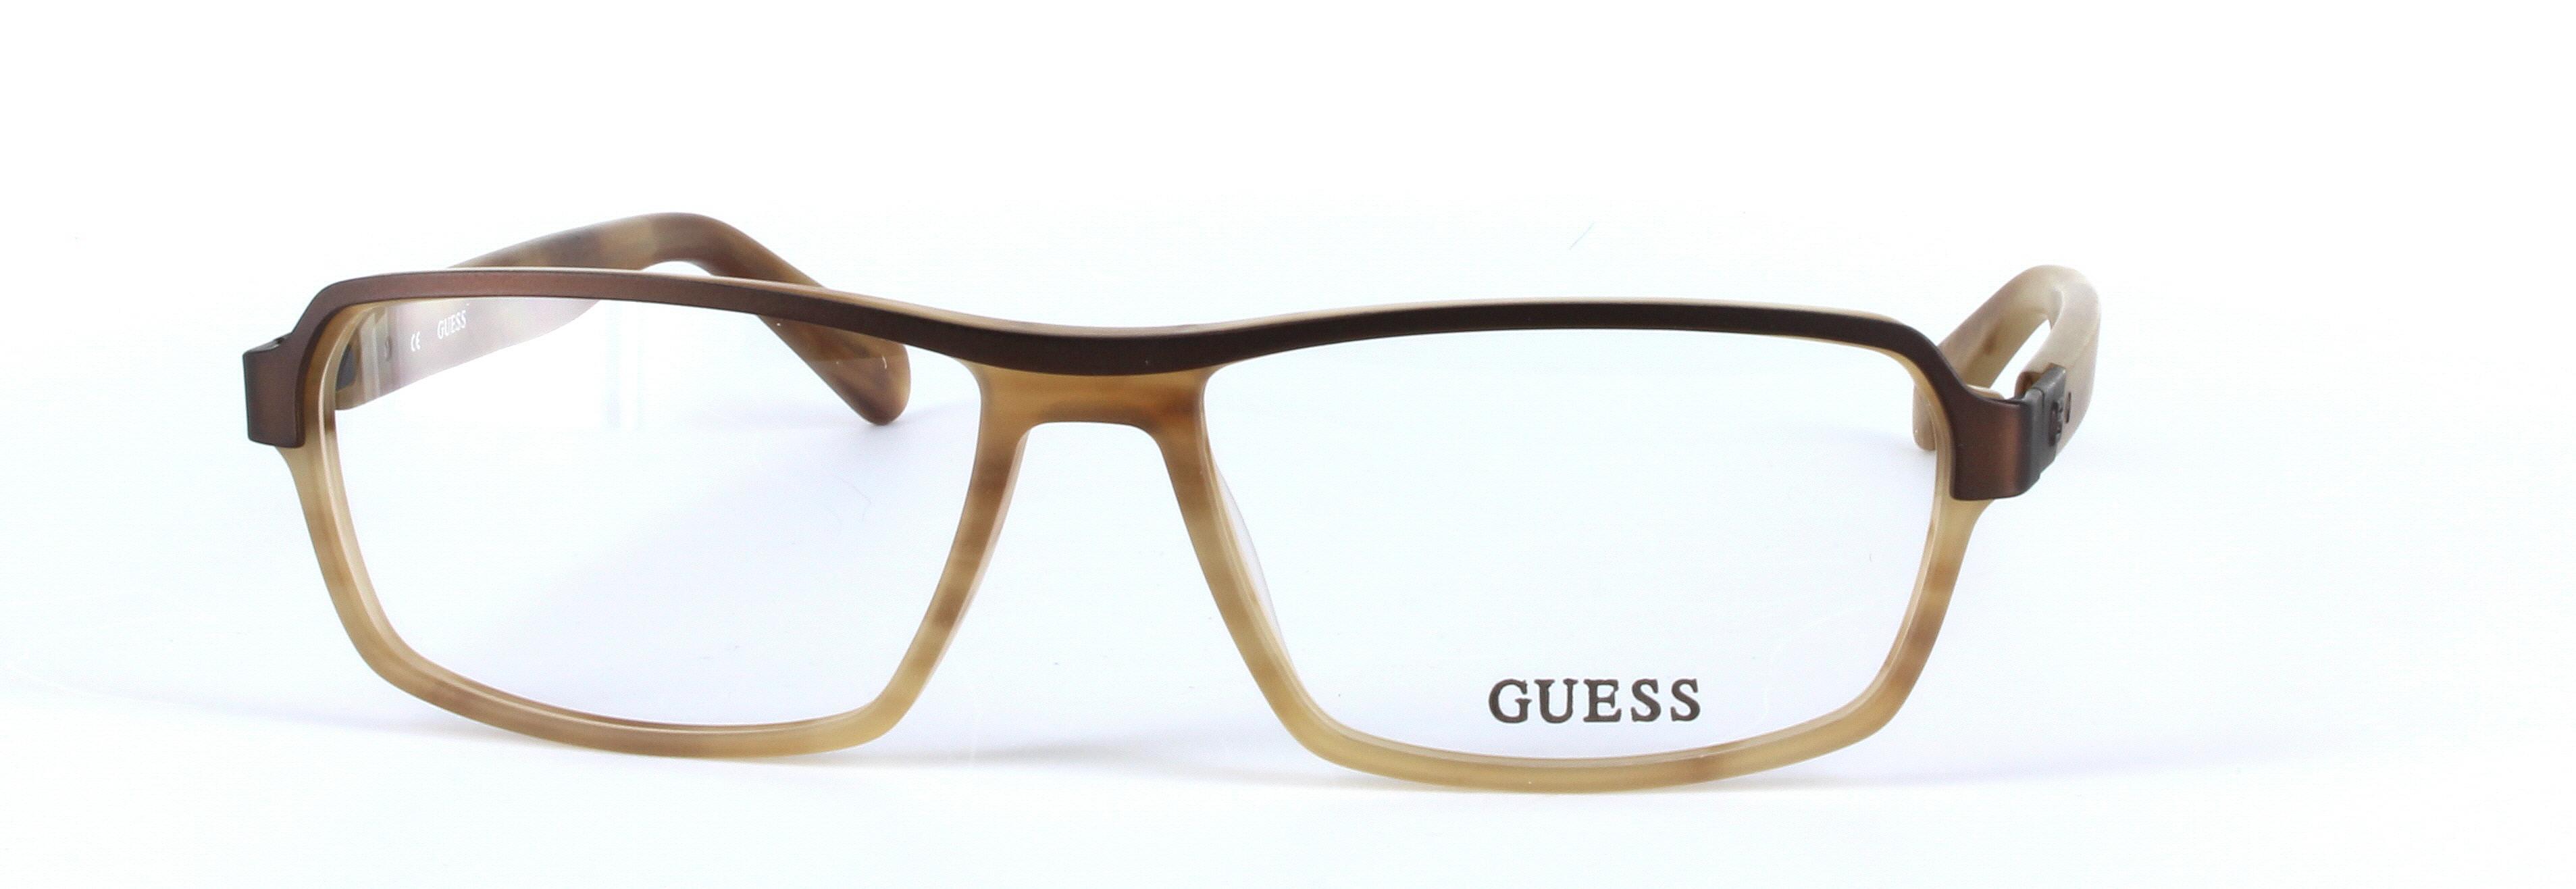 GUESS (GU1790-BRN) Brown Full Rim Rectangular Acetate Glasses - Image View 5